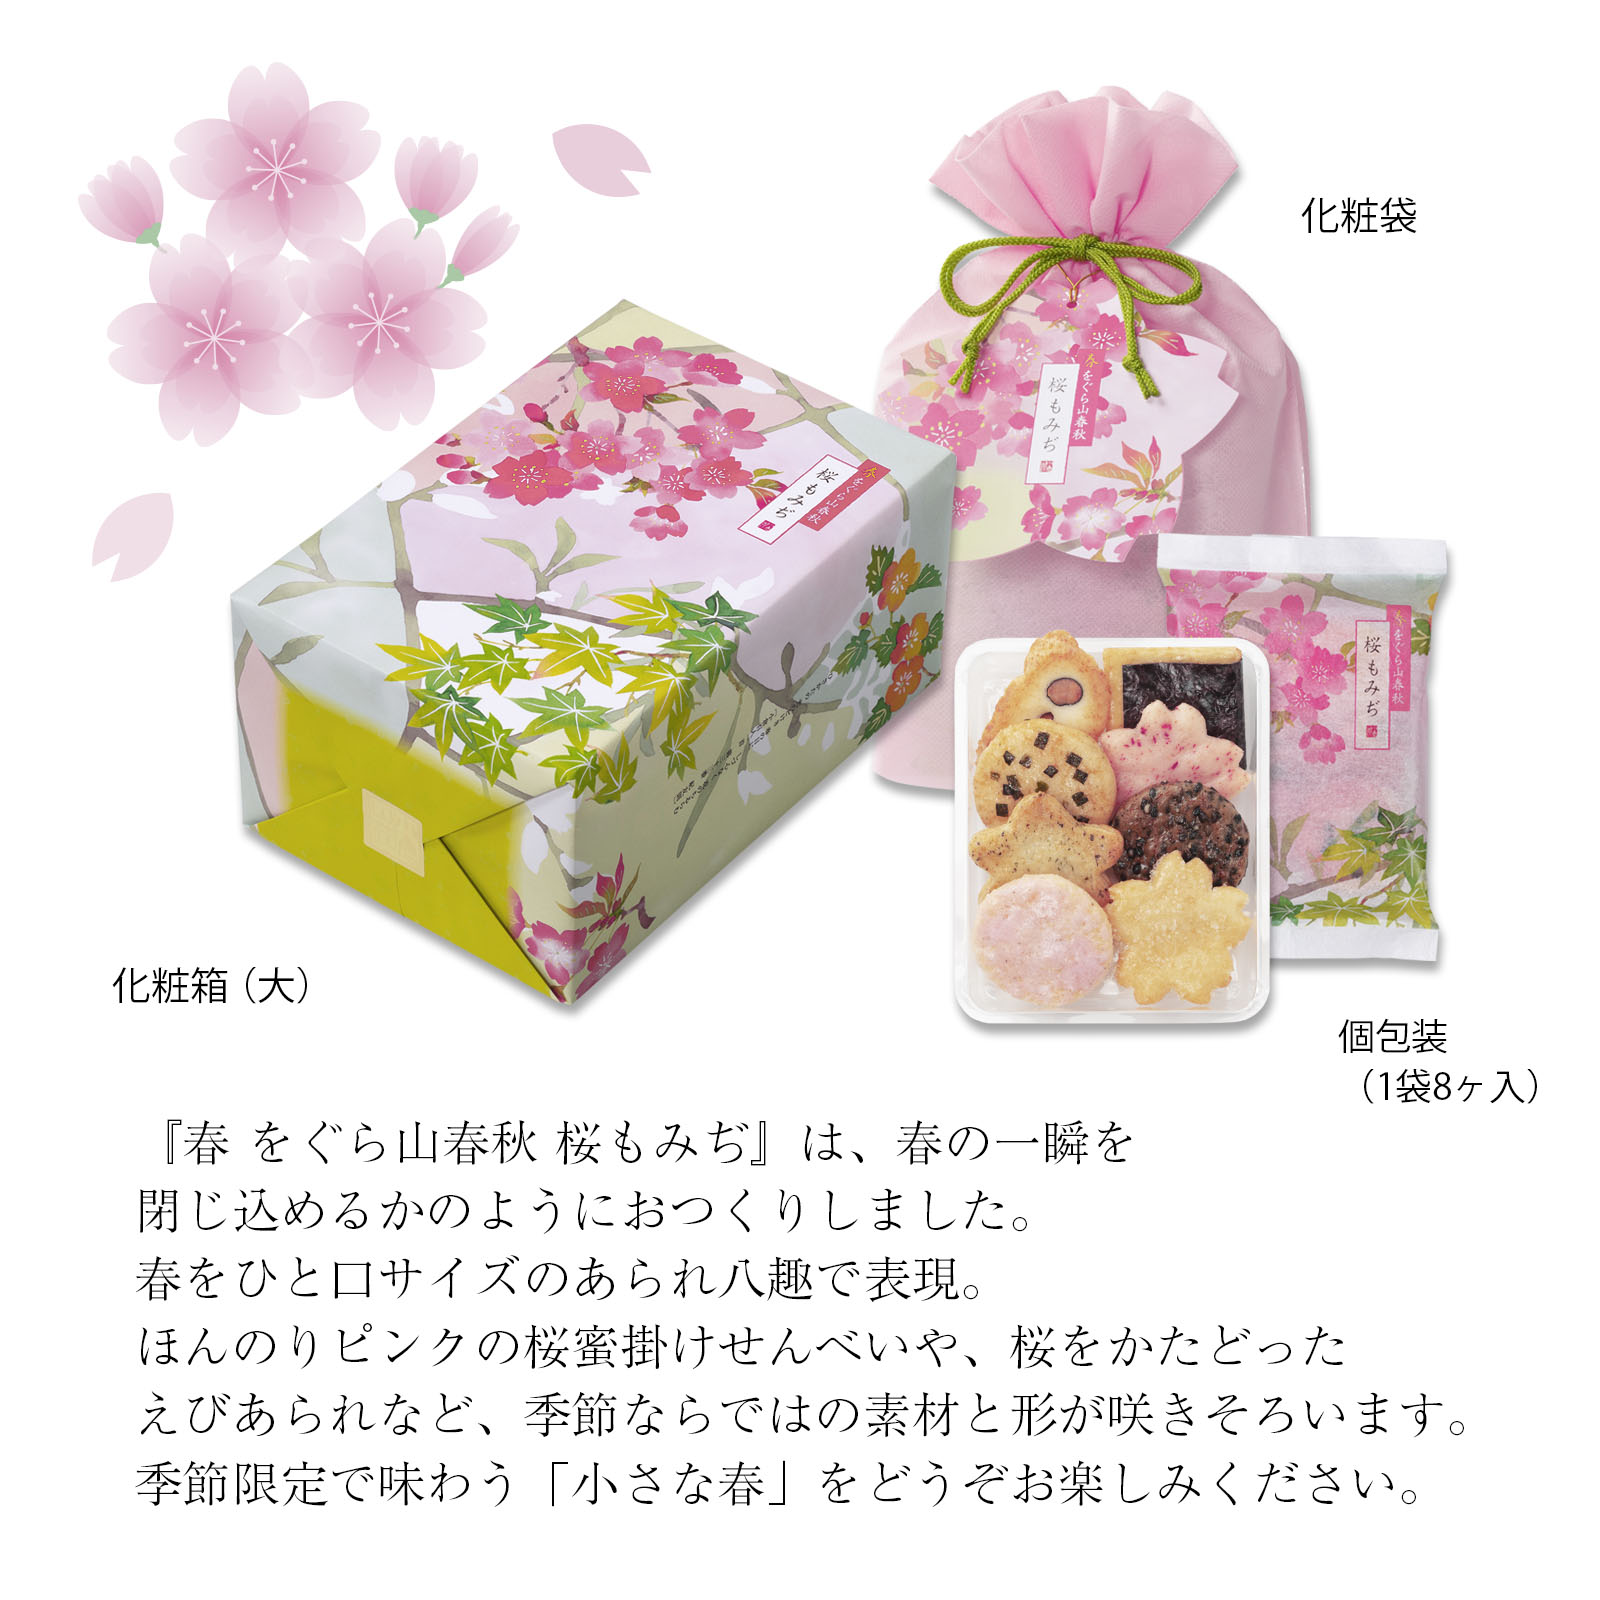 【2月25日販売予定】春をぐら山春秋 桜もみぢ 化粧袋